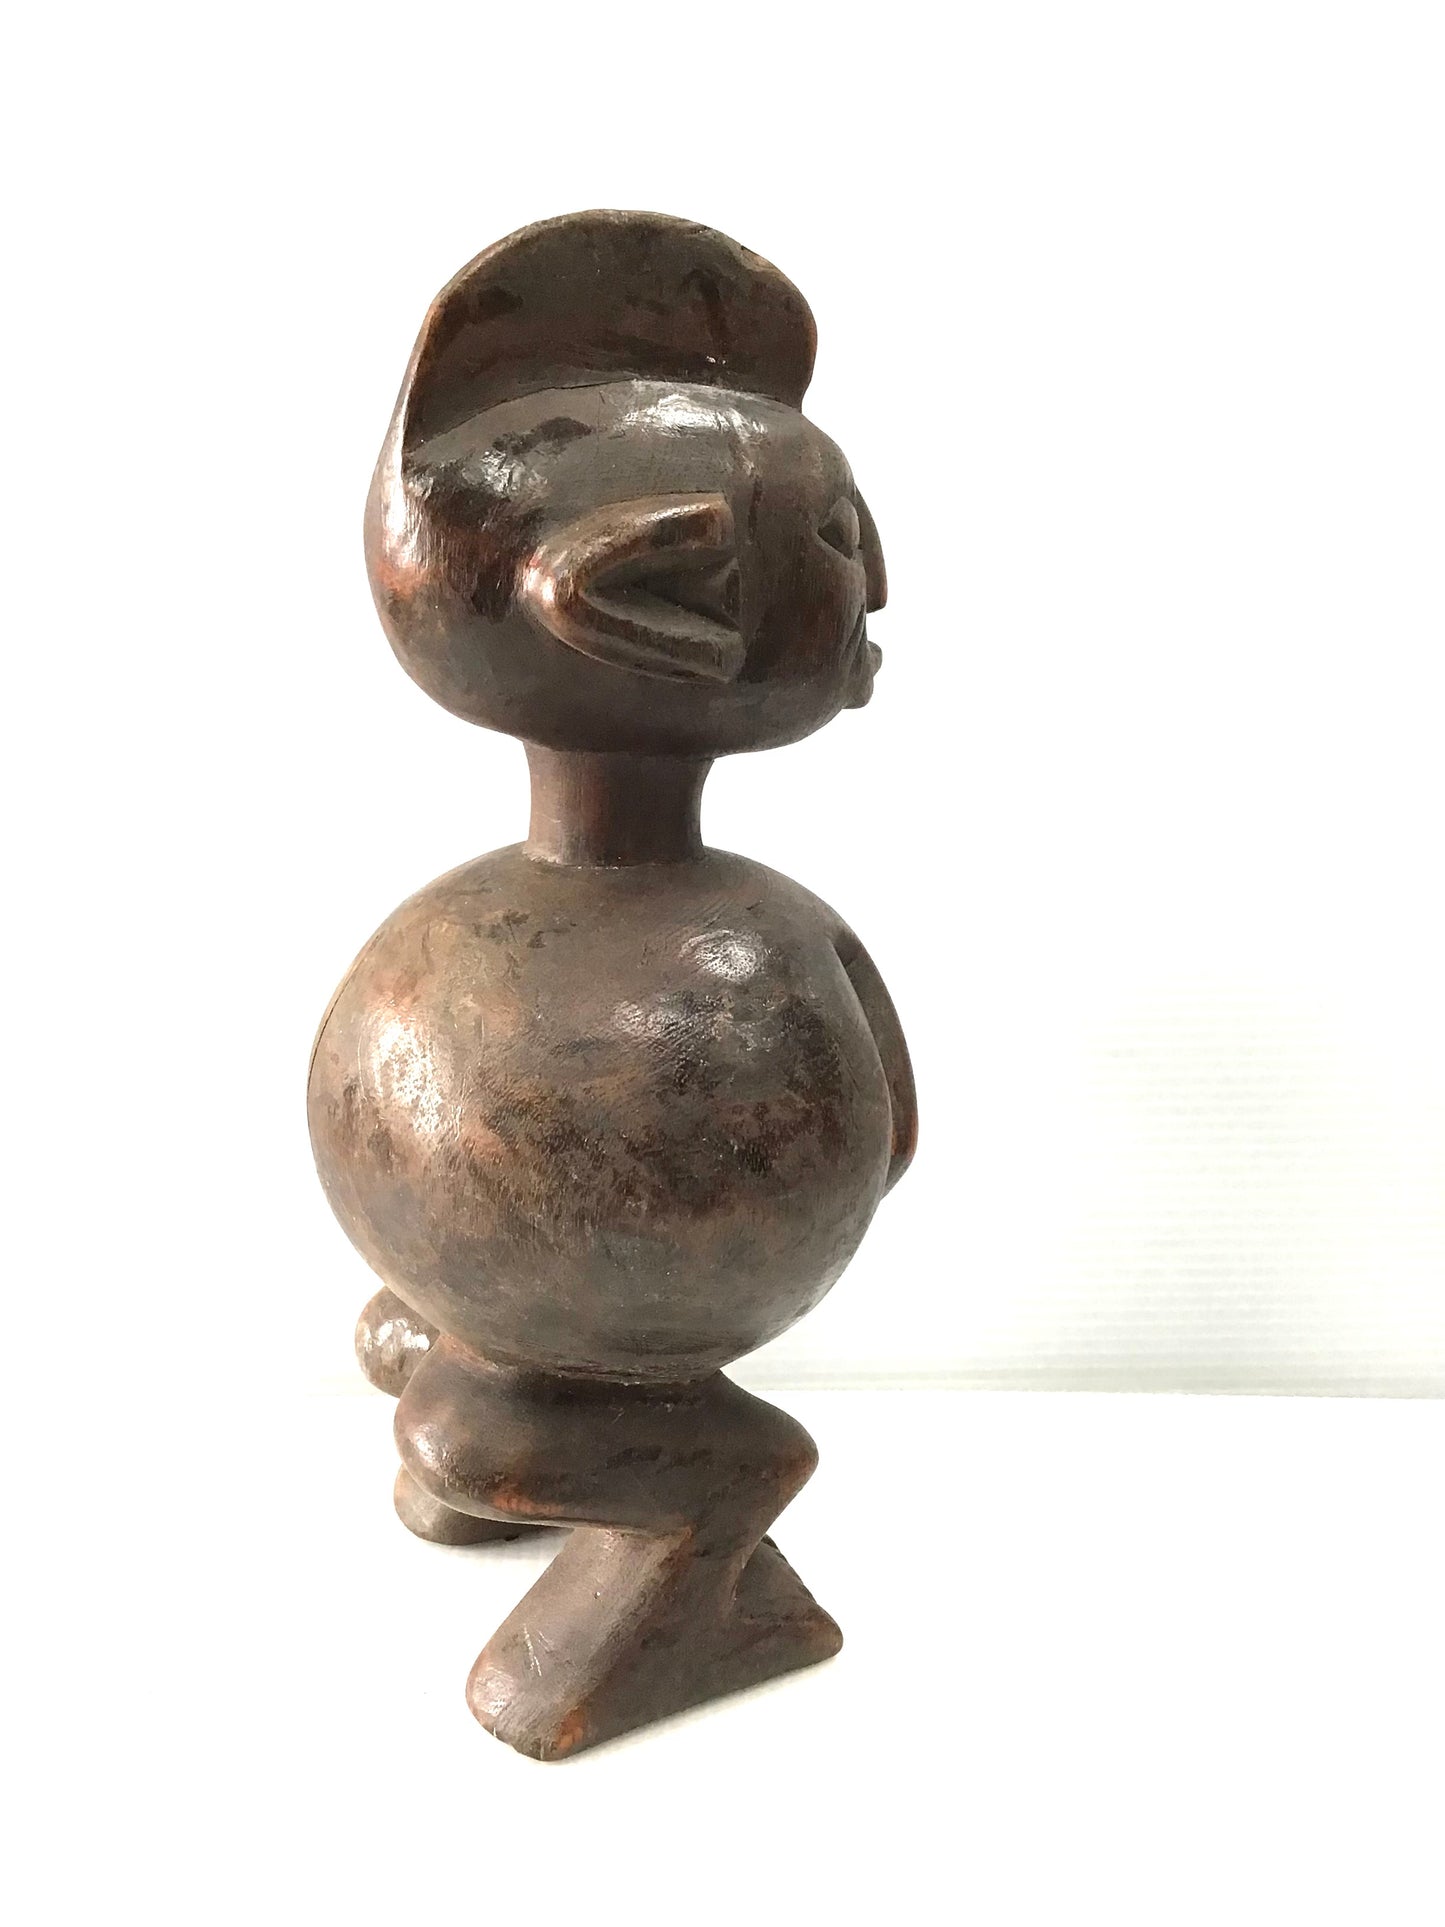 Yoruba Fertility Sculpture